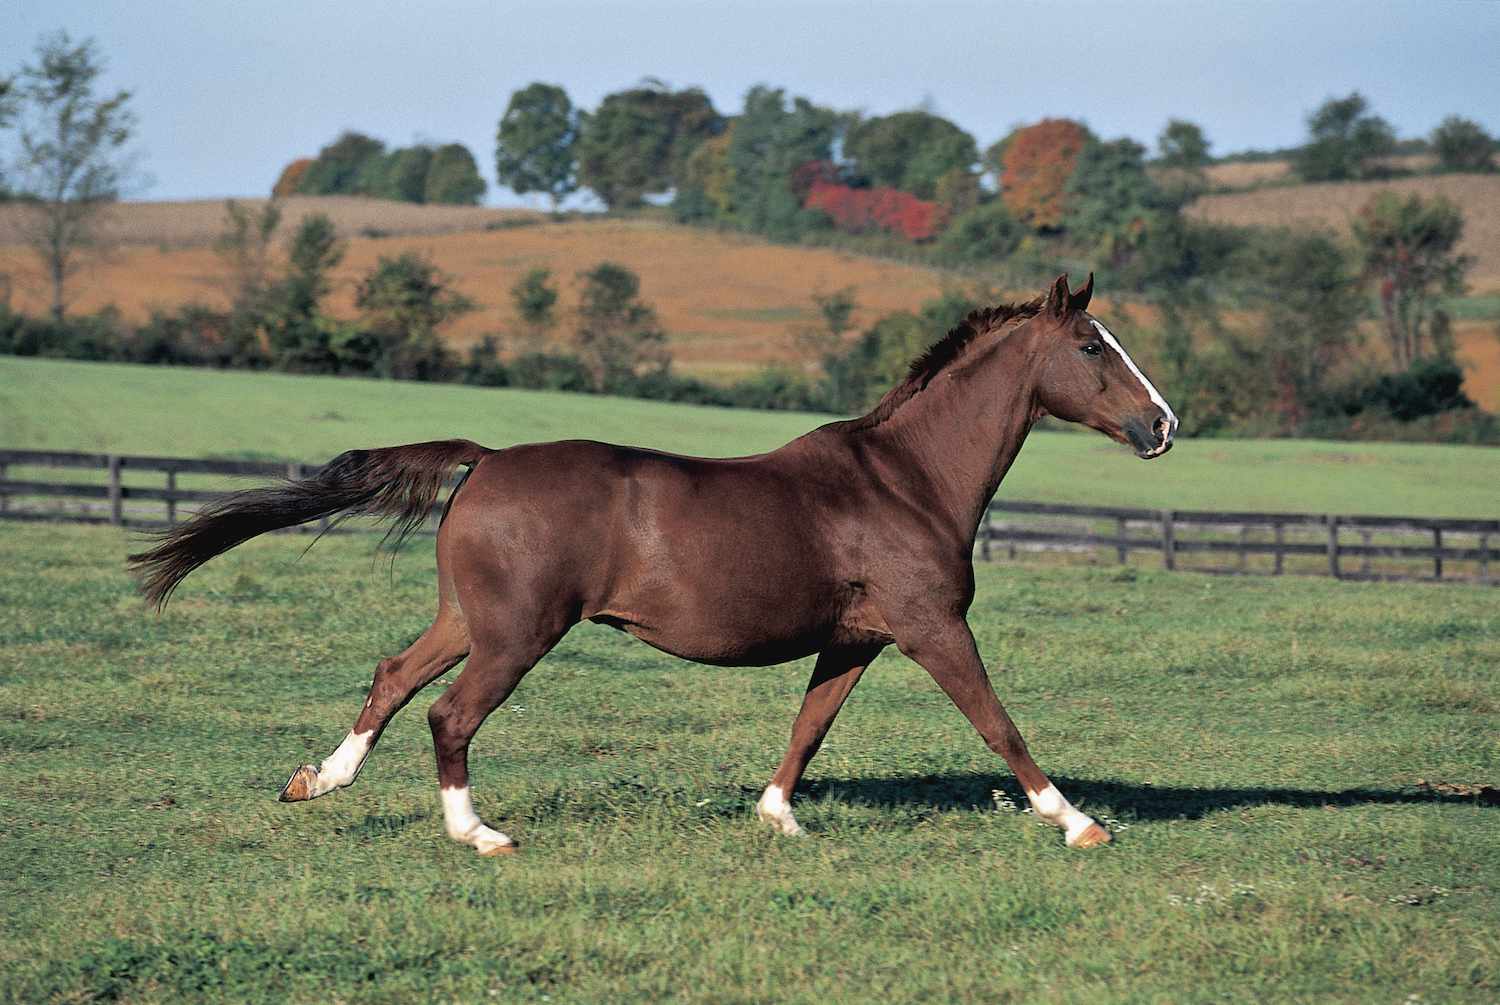 warmblood horse running through a field